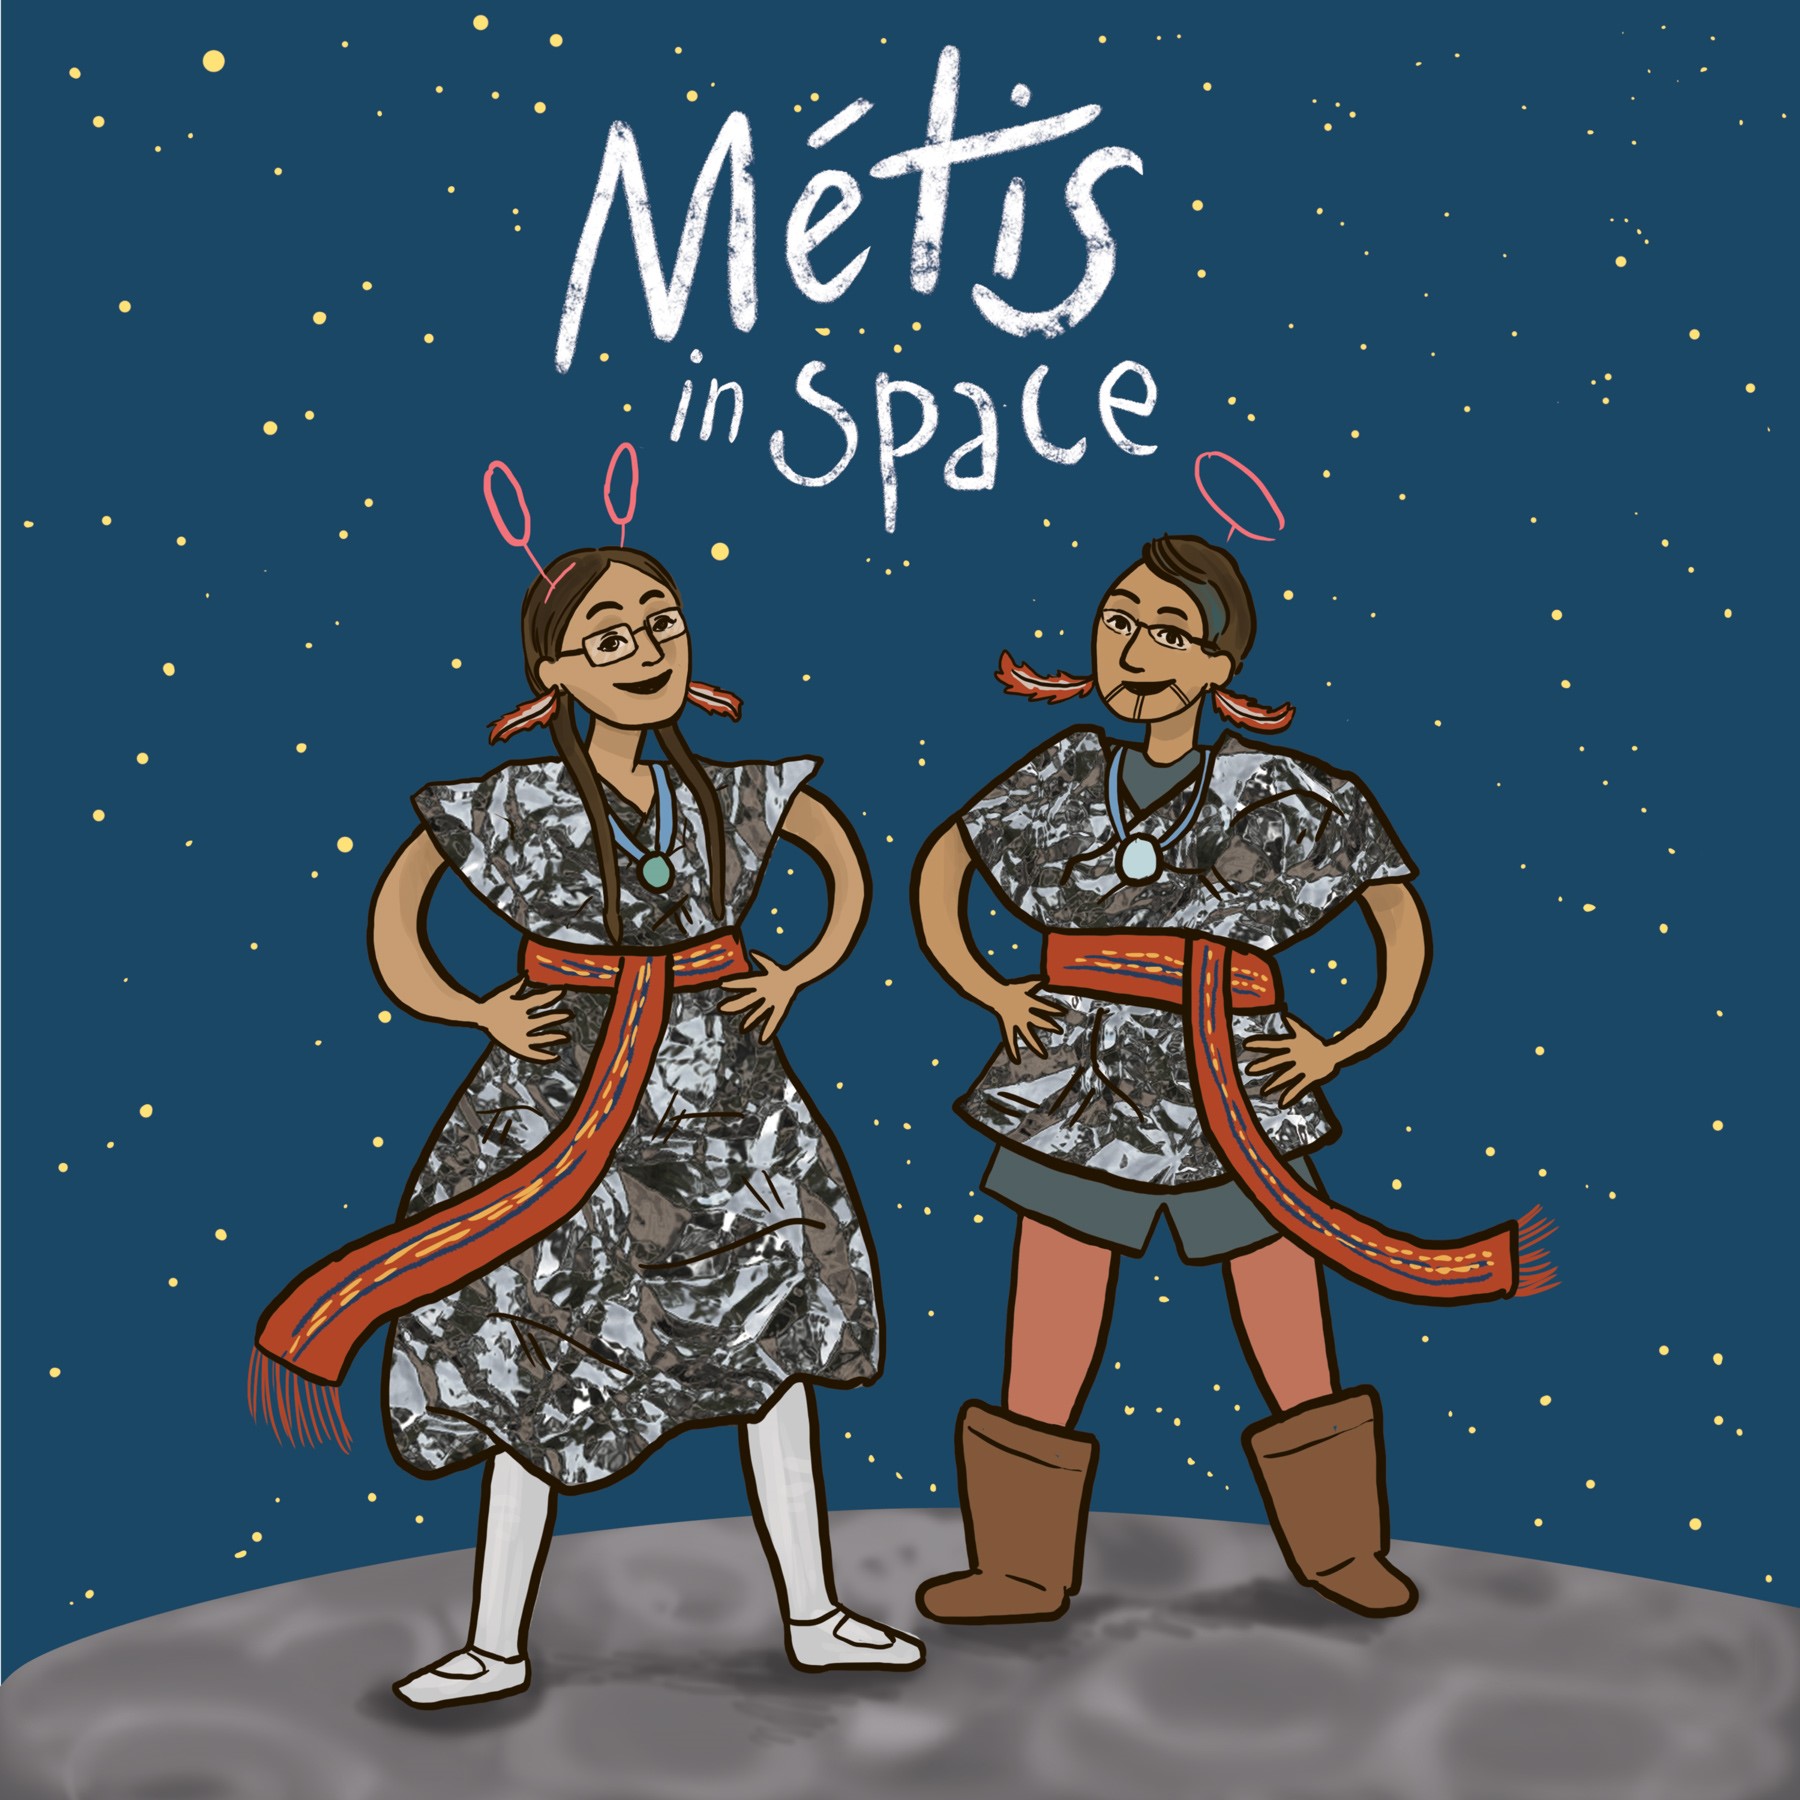 Metis in Space